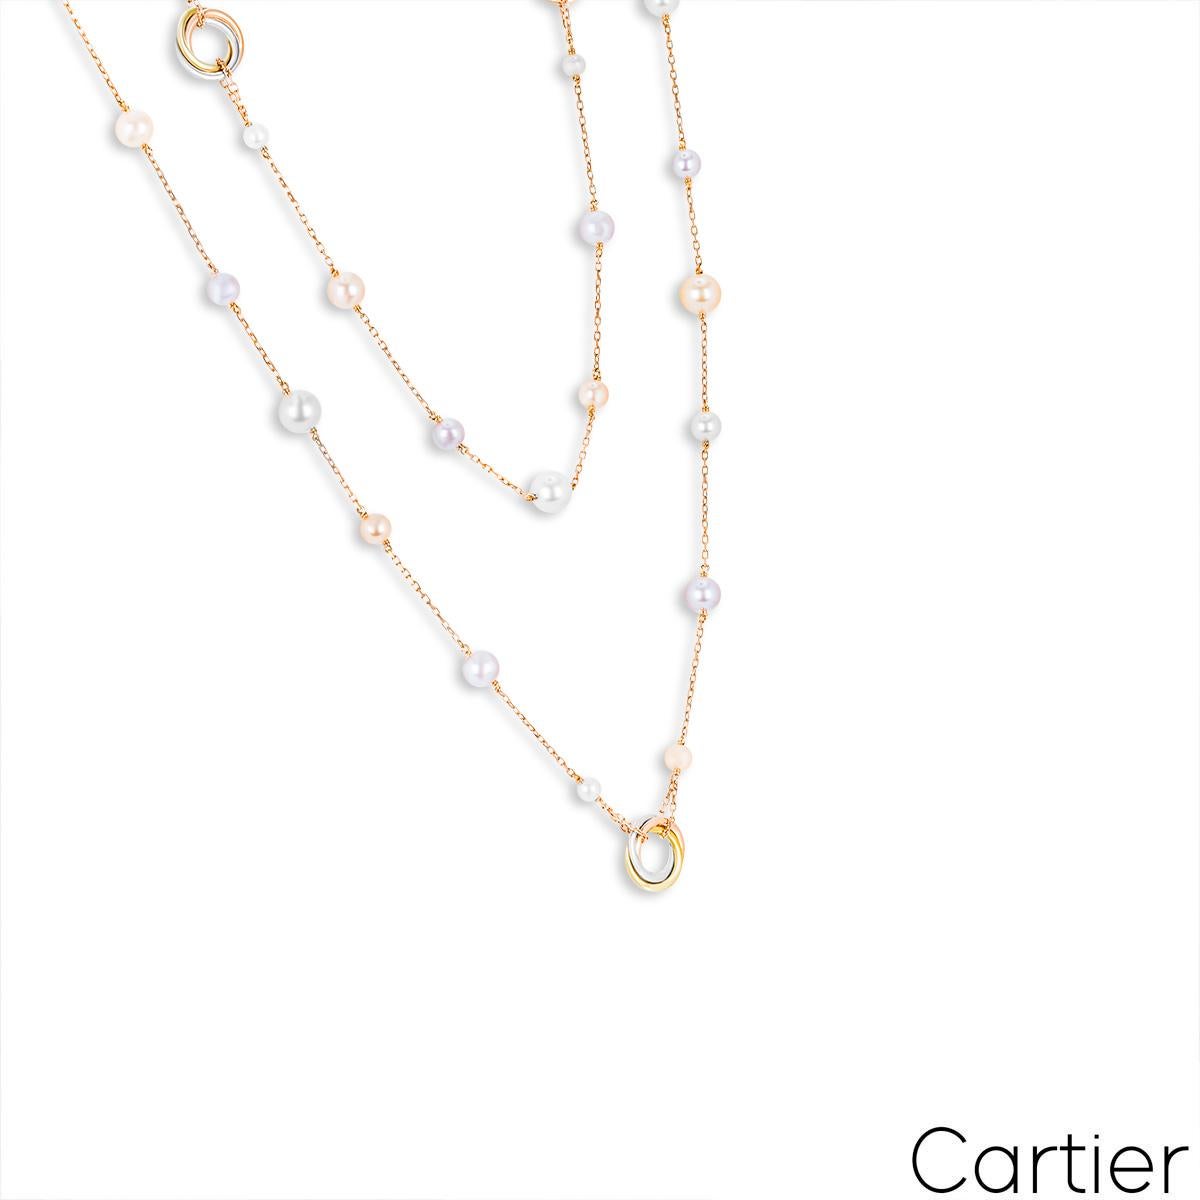 Eine wunderschöne Perlenkette aus 18 Karat Roségold von Cartier aus der Kollektion Trinity de Cartier. Das Collier besteht aus 5 Stationen mit drei ineinander verschlungenen, kreisförmigen Motiven aus dreifarbigem Gold. Zwischen jedem Trinity-Motiv